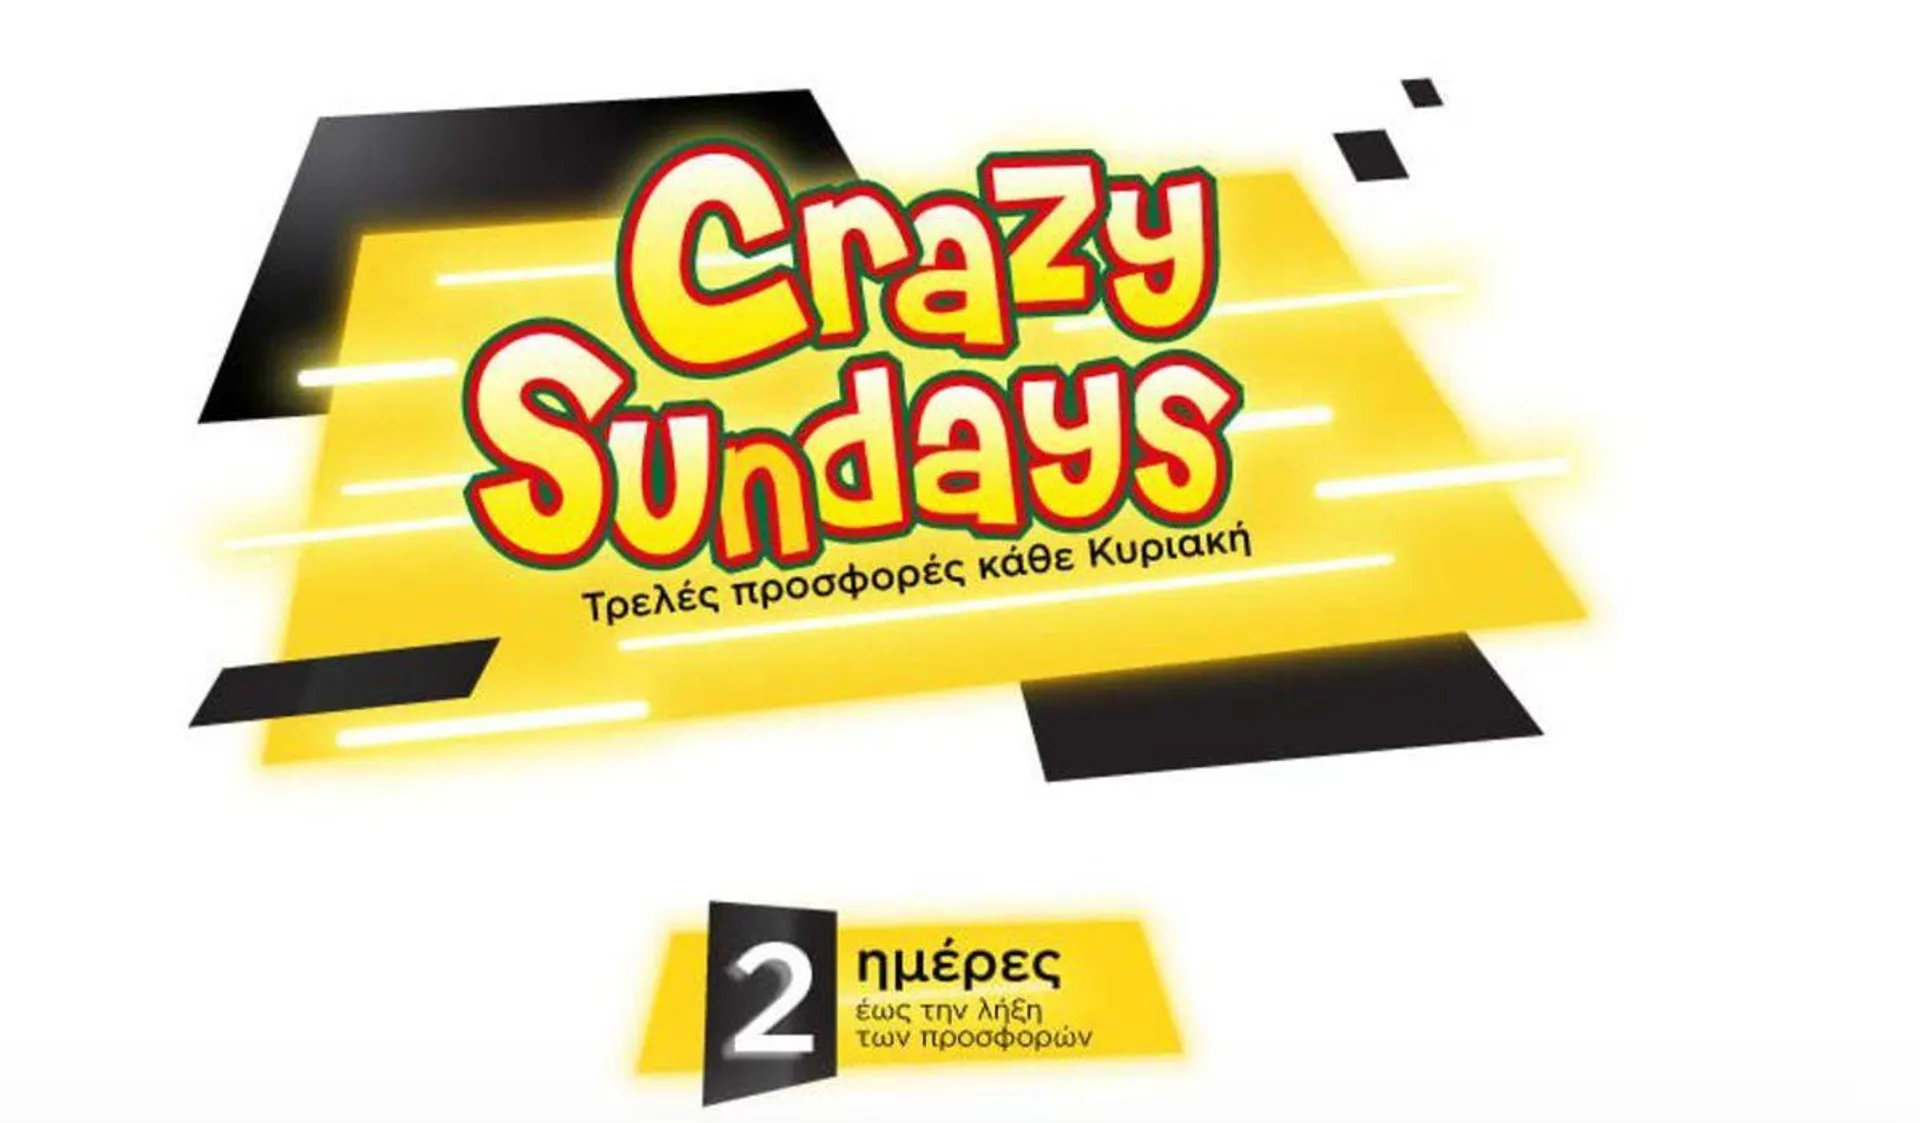 Crazy Sundays  - 1